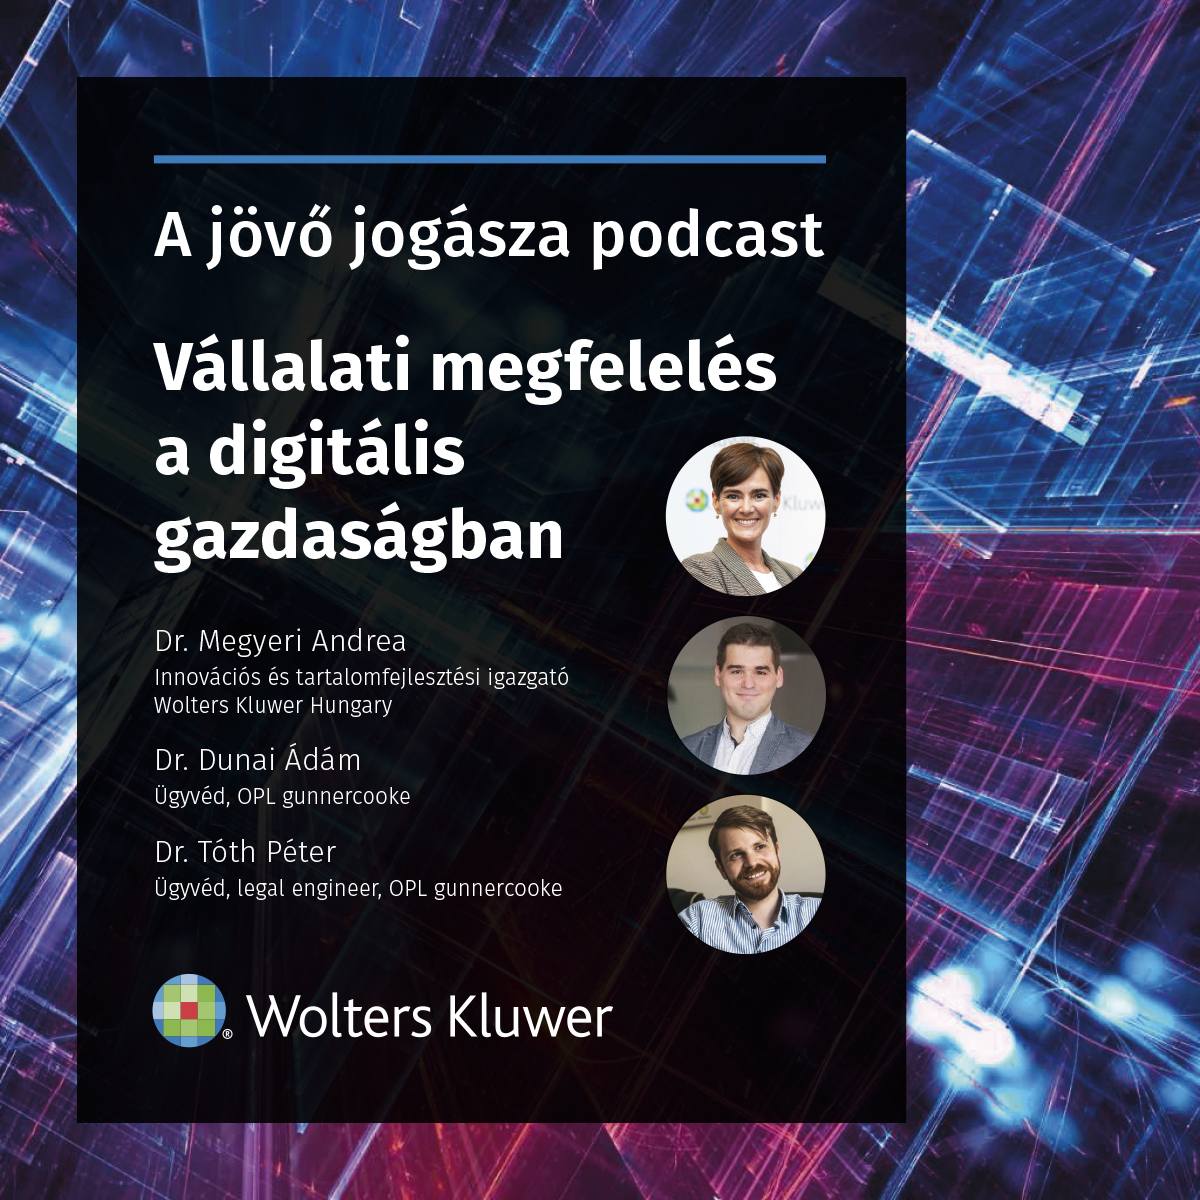 A jövő jogásza podcast: vállalati megfelelés a digitális gazdaságban